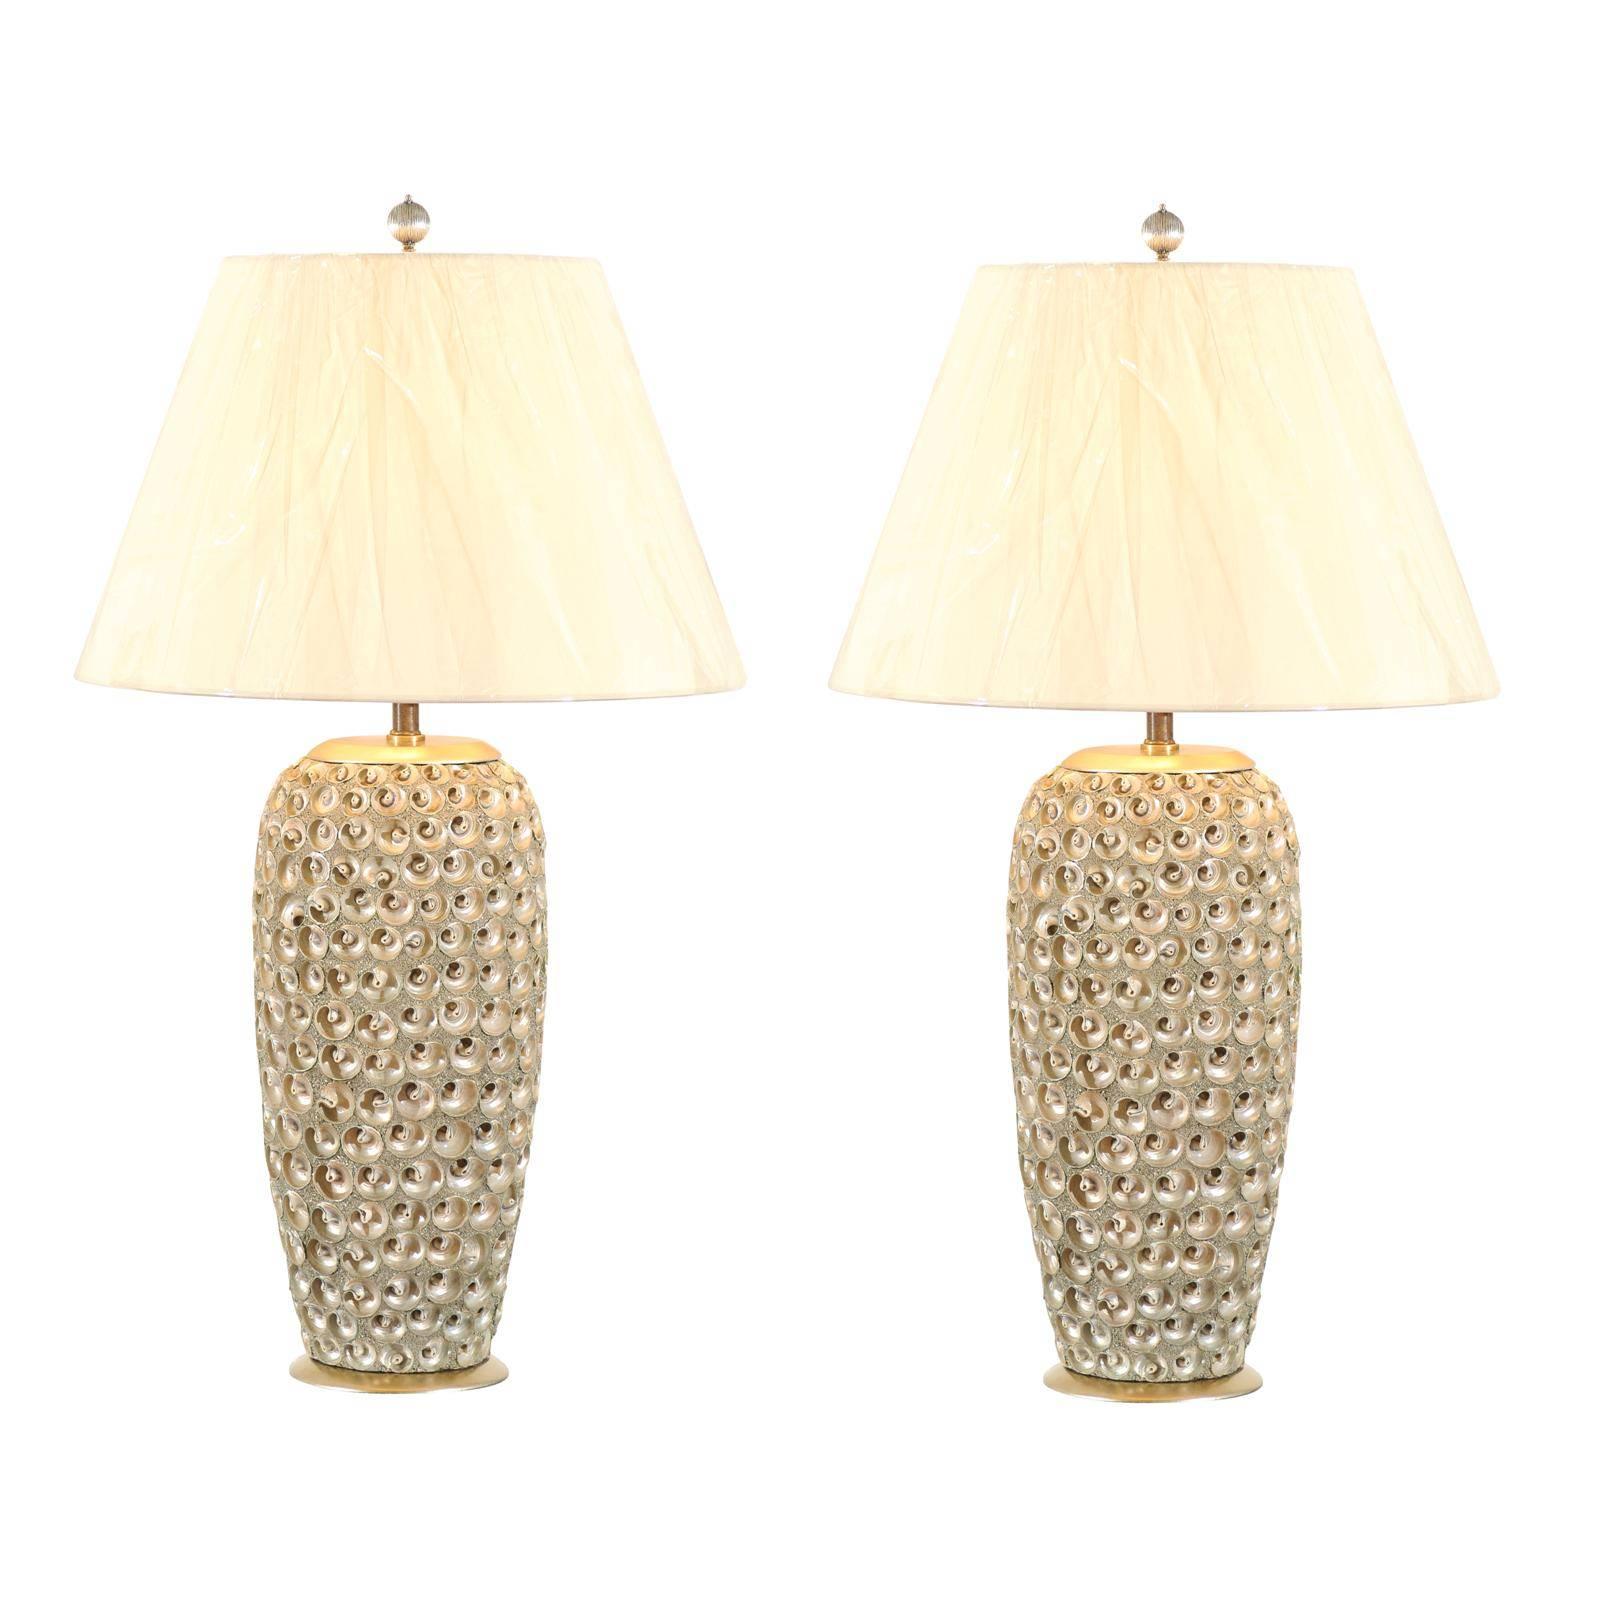 Paire de lampes modernes en forme de coquillage de grande taille en lucite avec des touches de feuilles d'argent